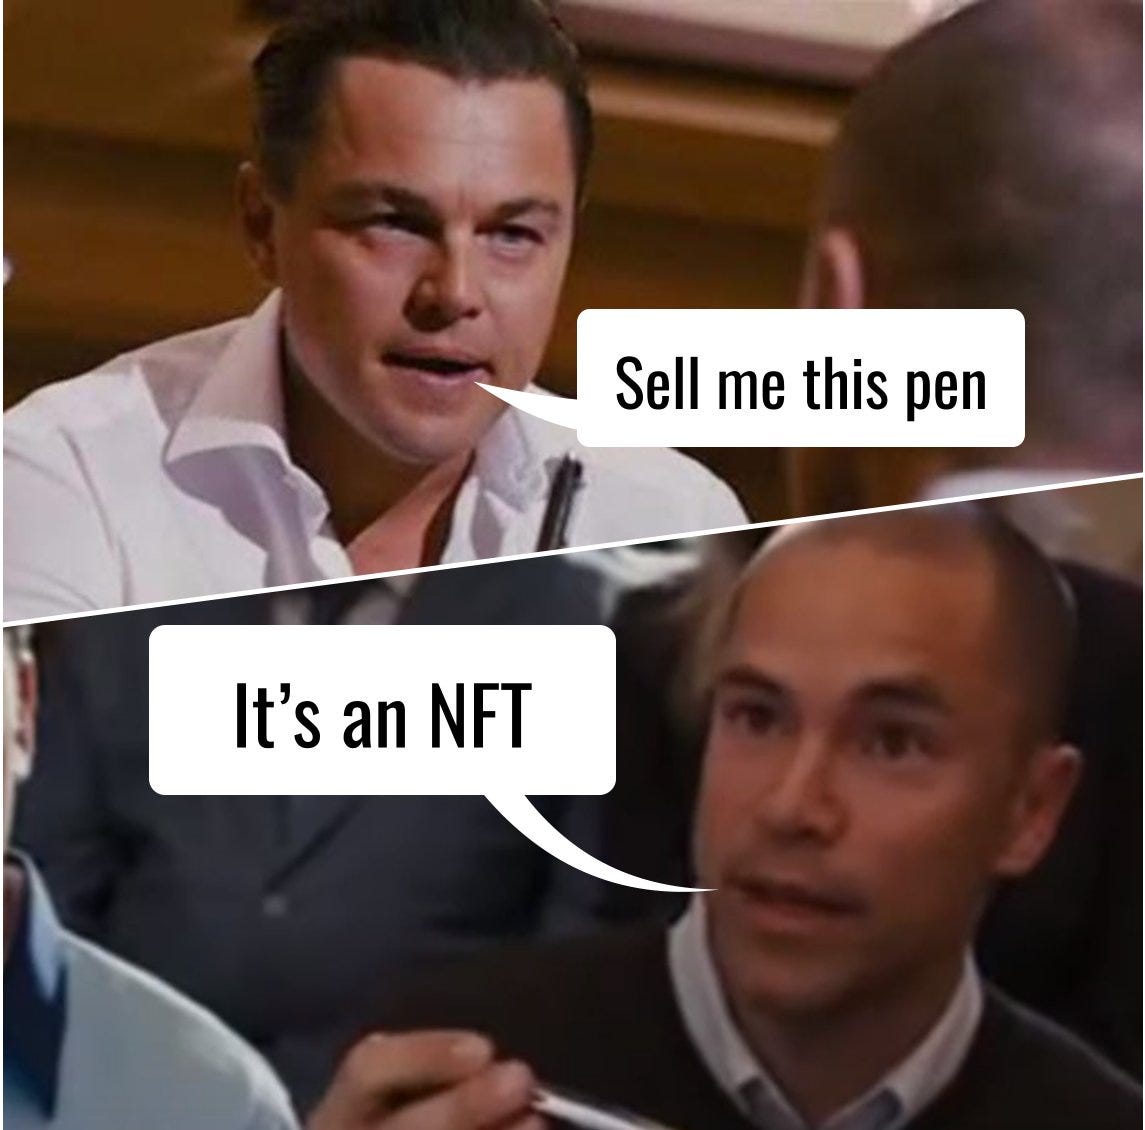 Artem Radchenko on Twitter: "— Sell me this pen — It's an NFT #joke #nft  #nftjoke #lol https://t.co/5AQ4MyBT1h" / Twitter